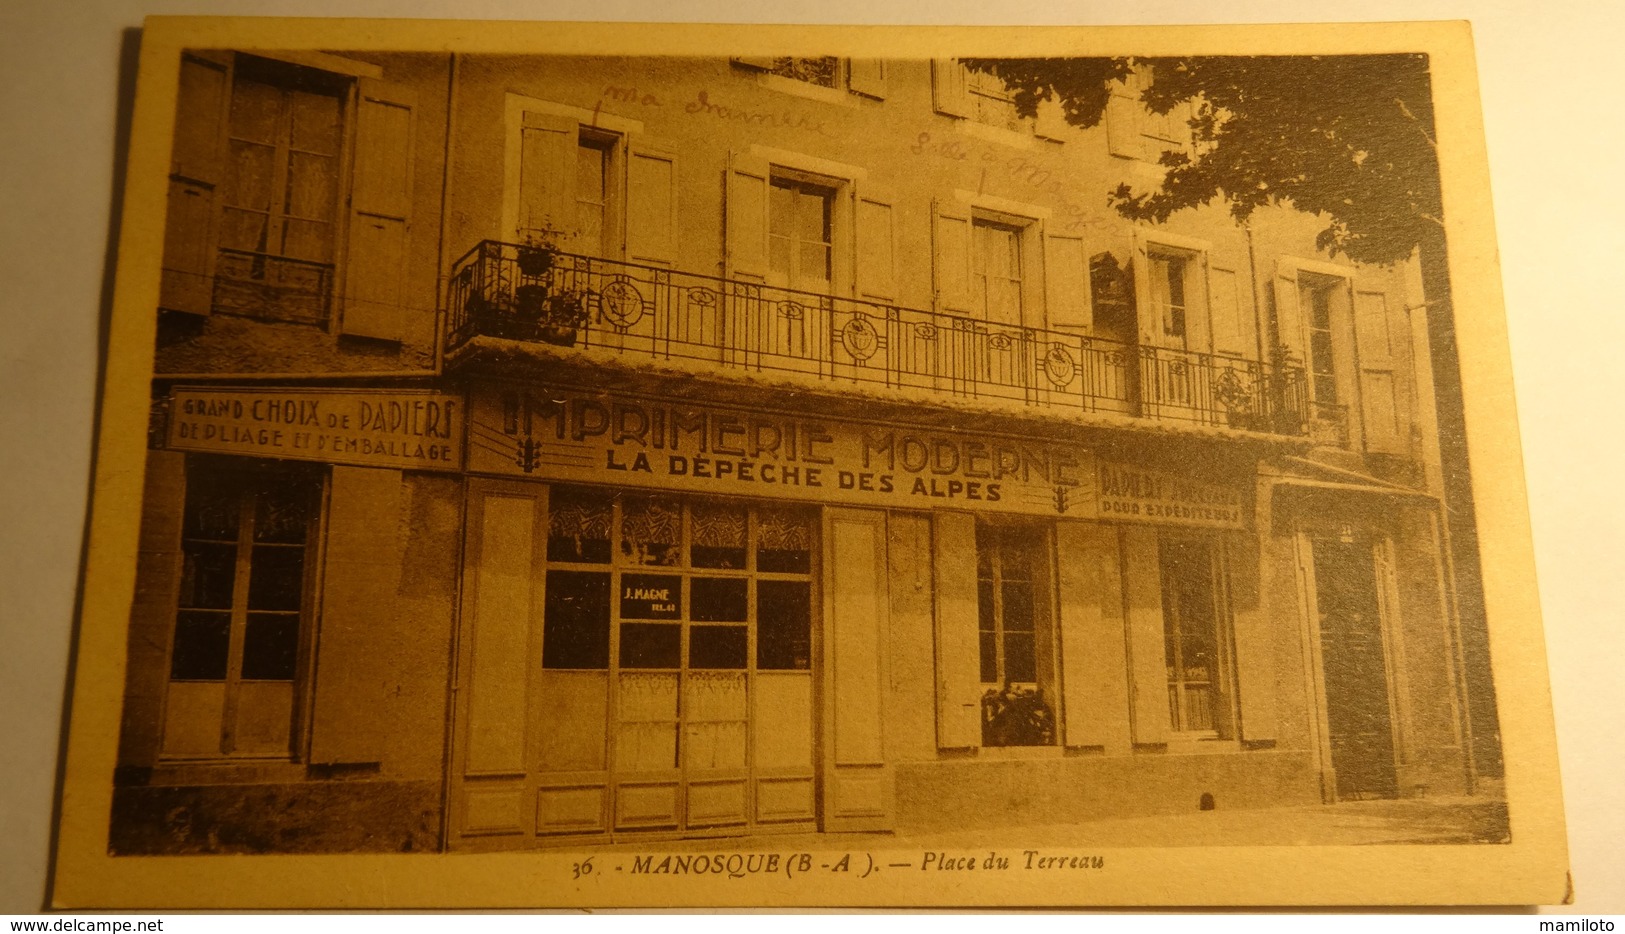 MANOSQUE ( B-A ) Place Du Terreau. ( Imprimerie Moderne LA DEPECHE DES ALPES ) - Manosque